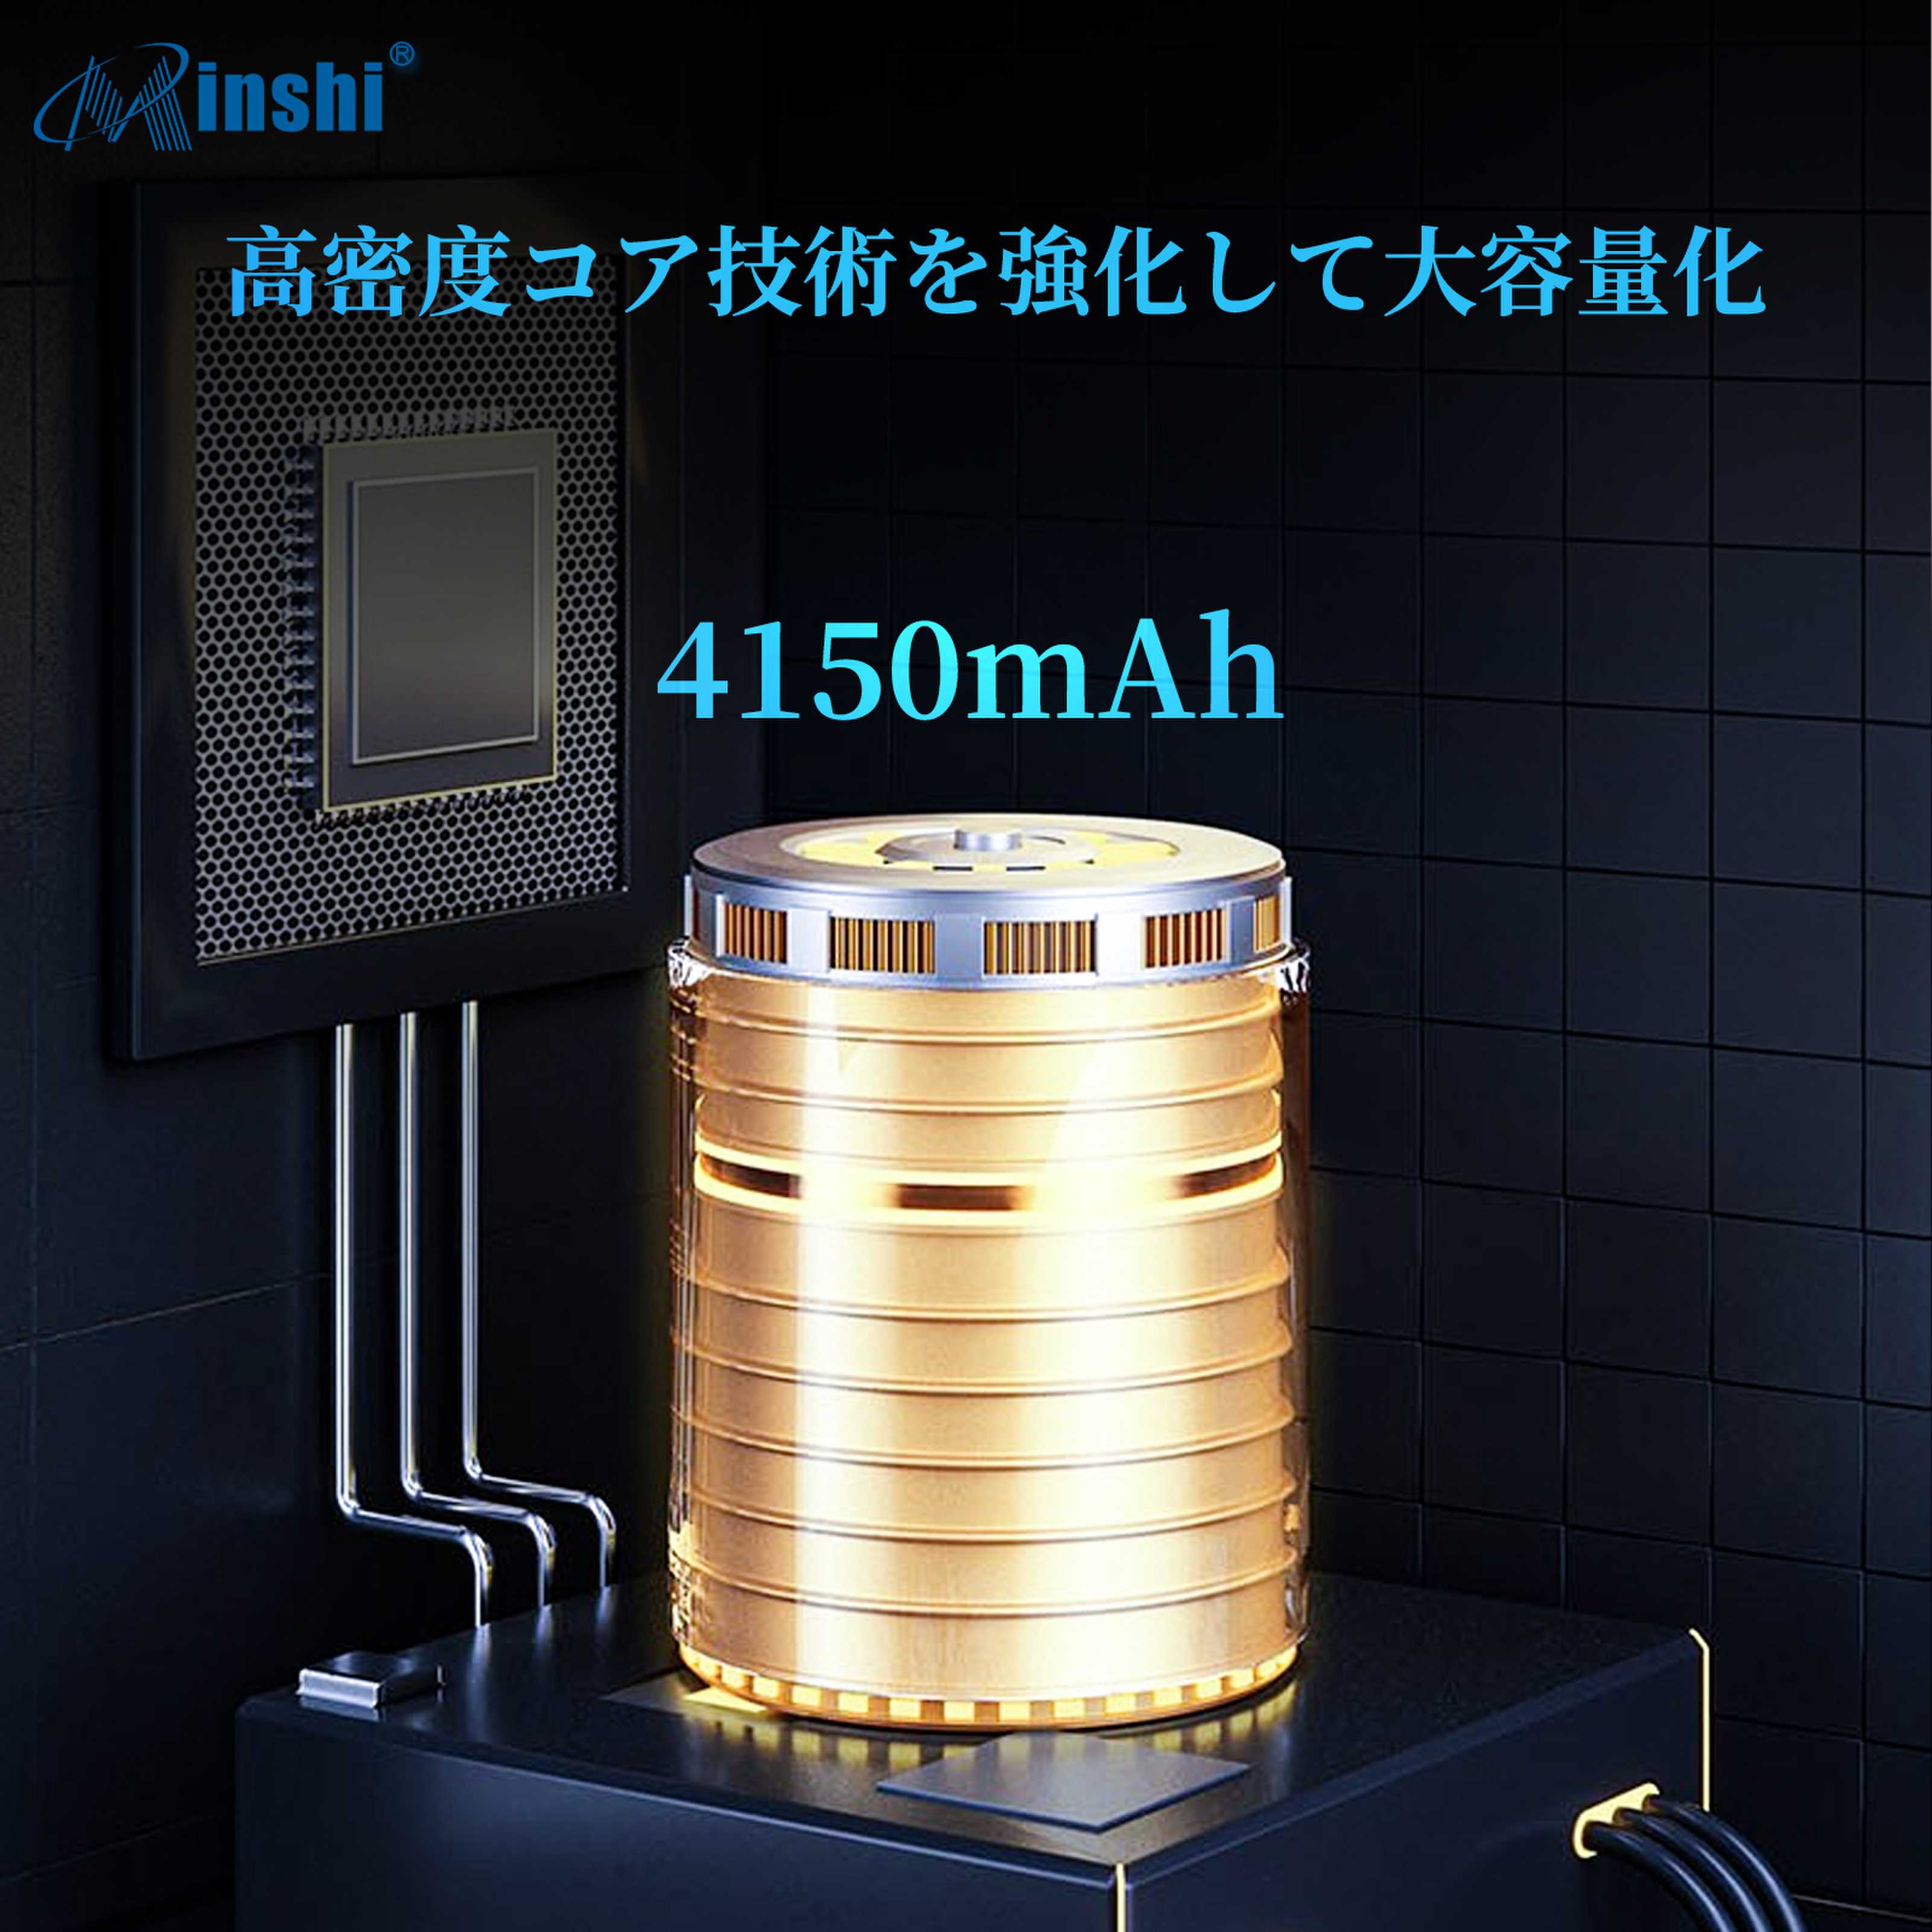 minshi Umidigi Umi Umidigi A7 pro 対応 交換バッテリー 4150mAh  互換バッテリー